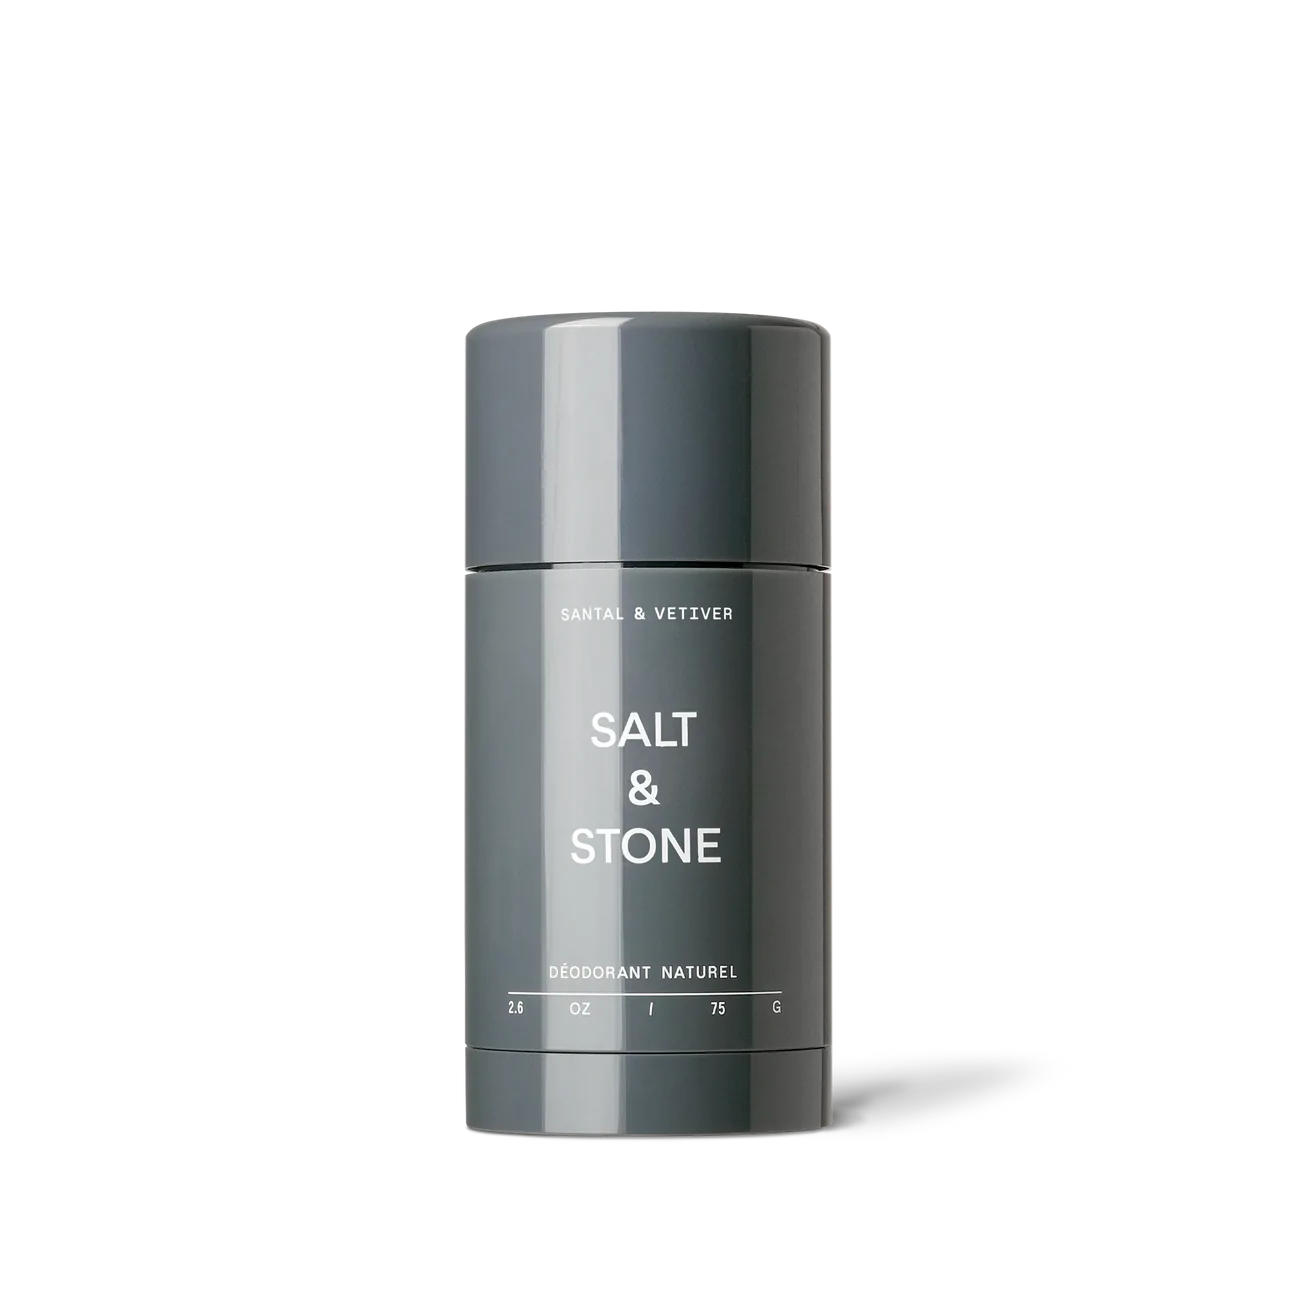 Natural Deodorant Sensitive Skin Formula, Santal & Vetiver